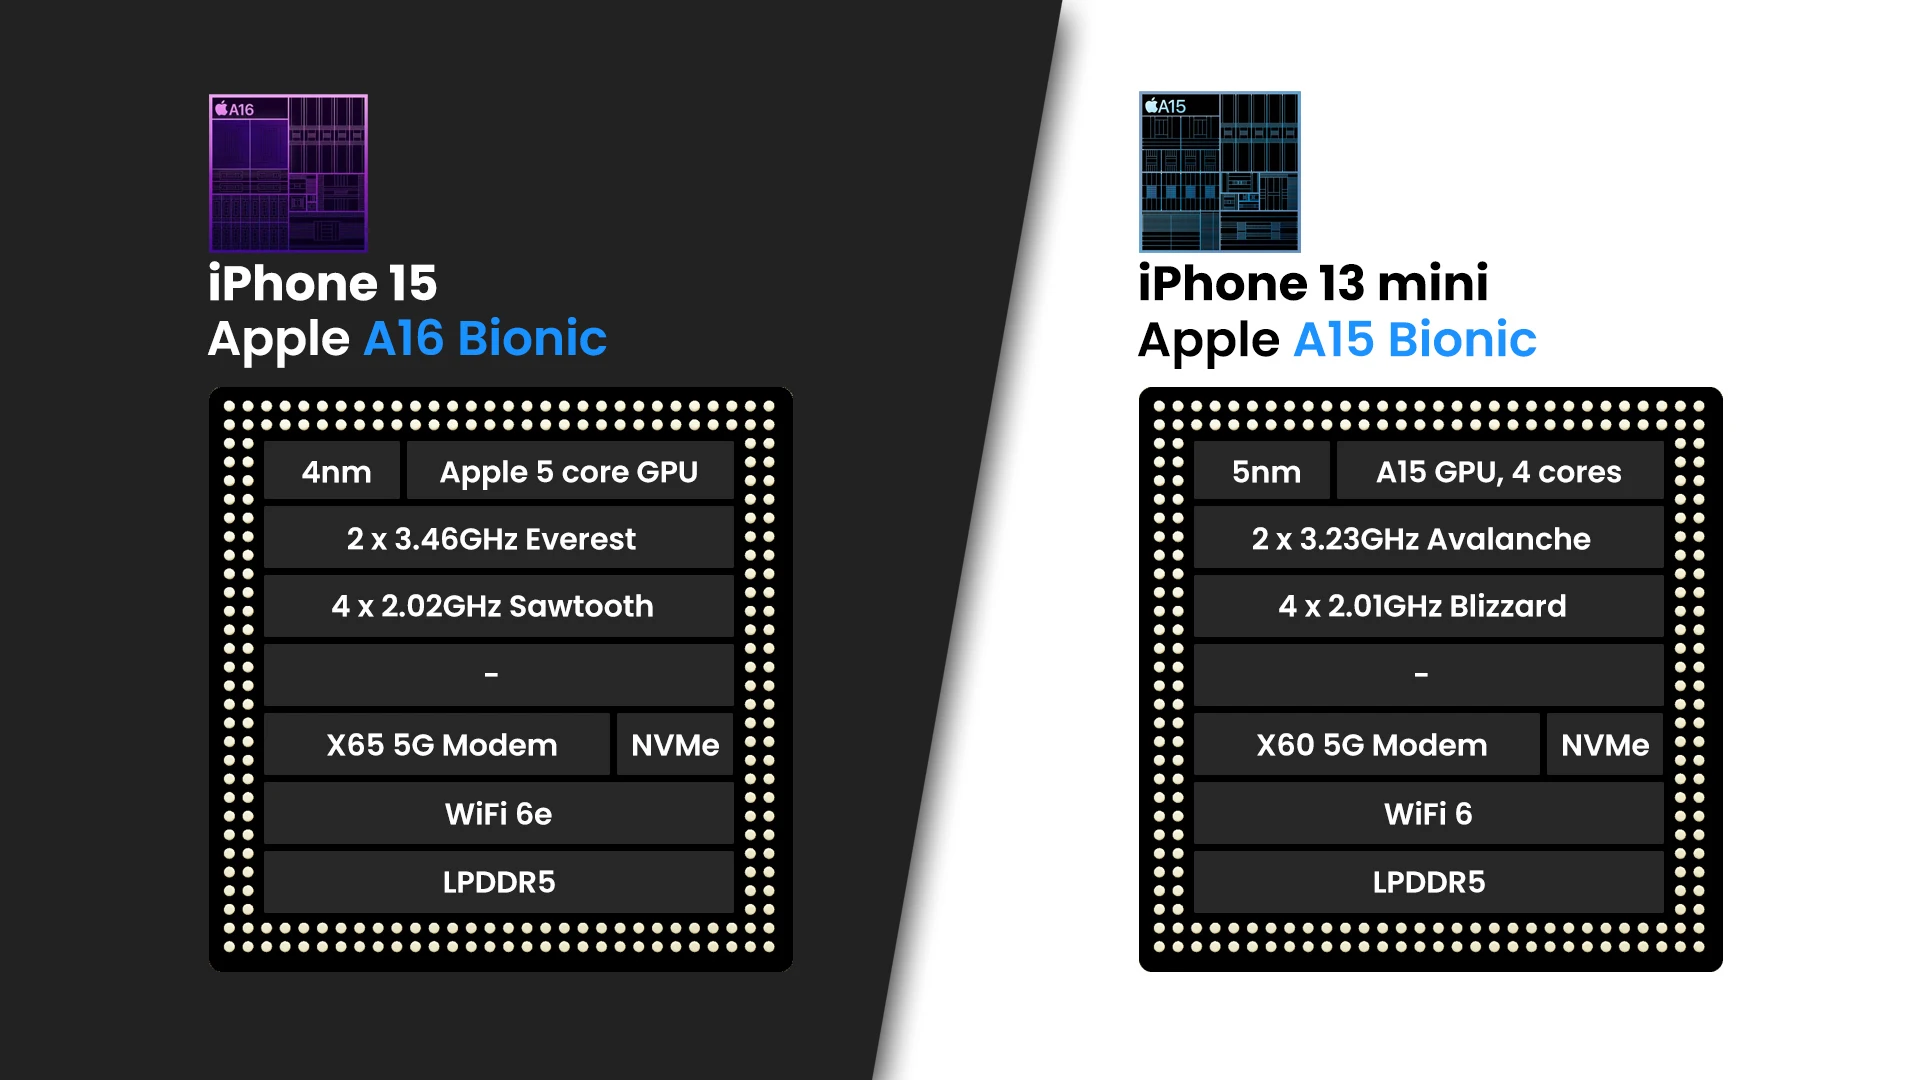 So sánh iPhone 15 và 13 mini, iPhone 15 sử dụng chip A16 Bionic thay vì chip A15 Bionic của iPhone 13 mini